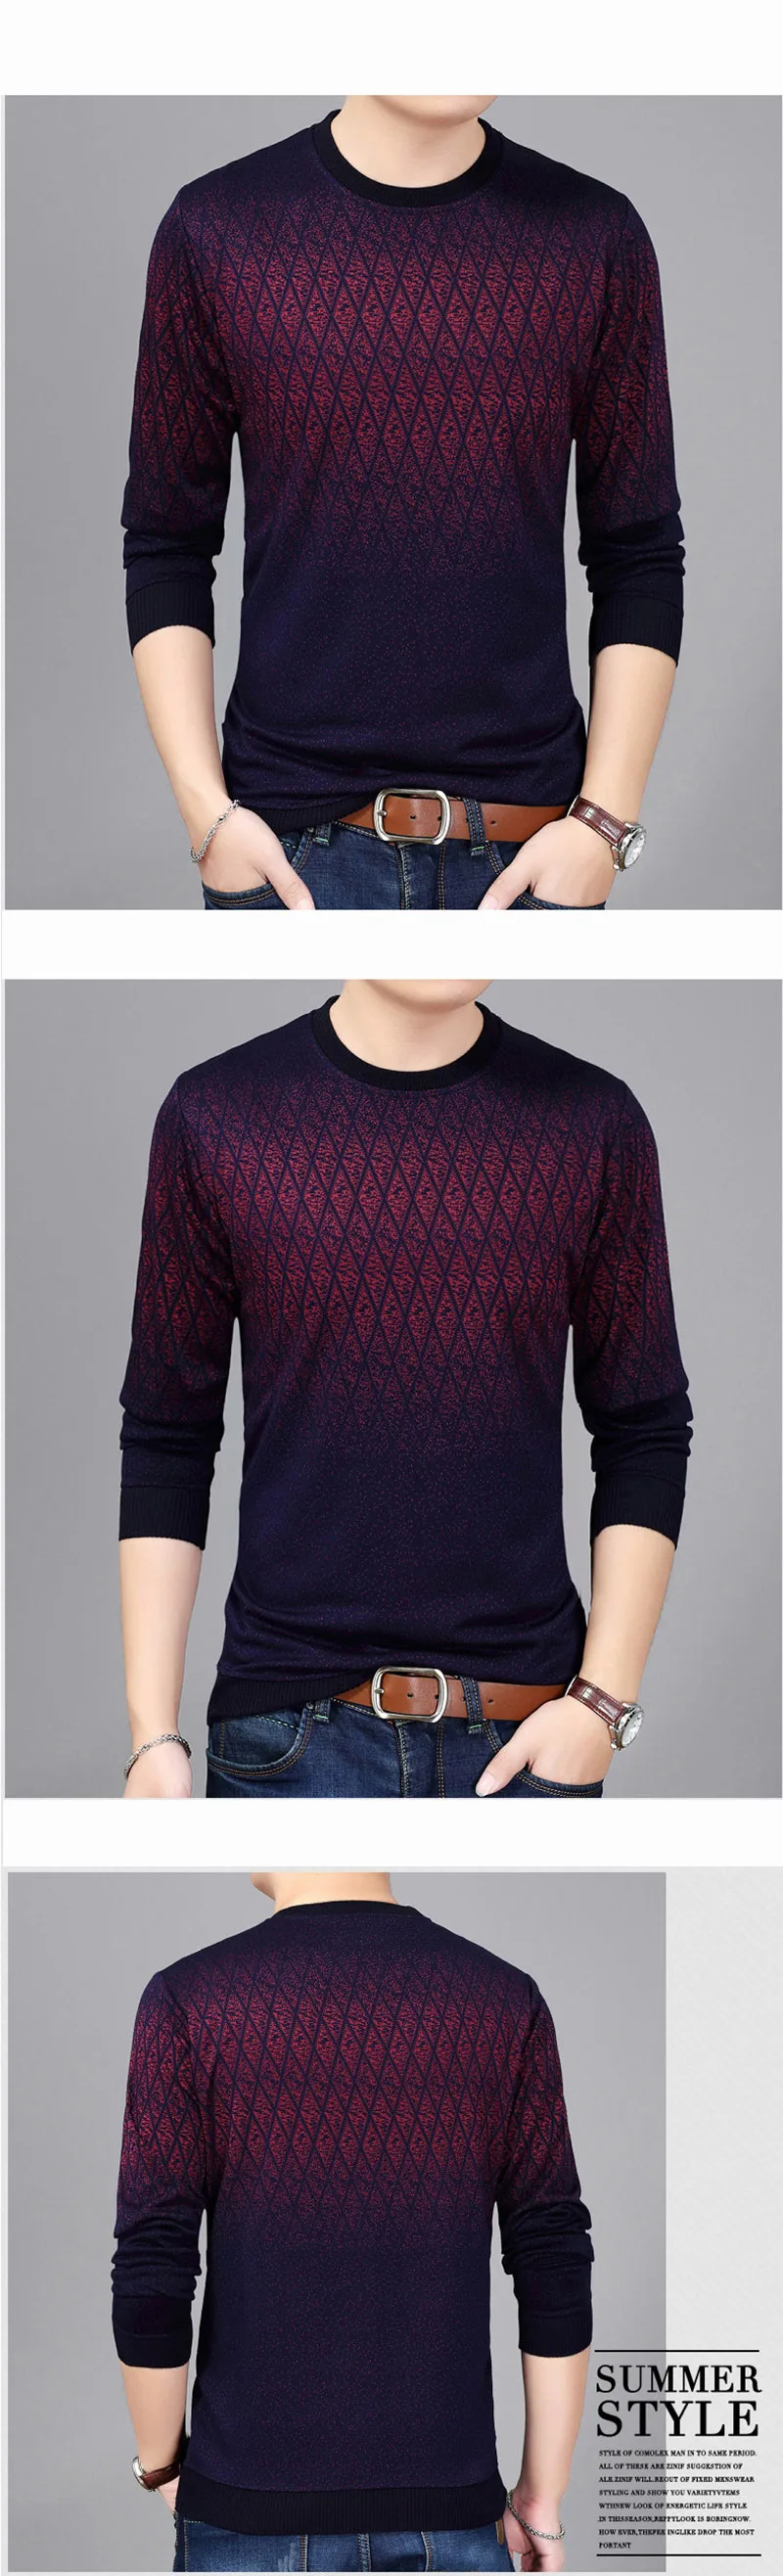 Повседневный Social Argyle пуловер и свитер для мужчин рубашка Джерси одежда пуловеры Мужская мода мужской трикотаж